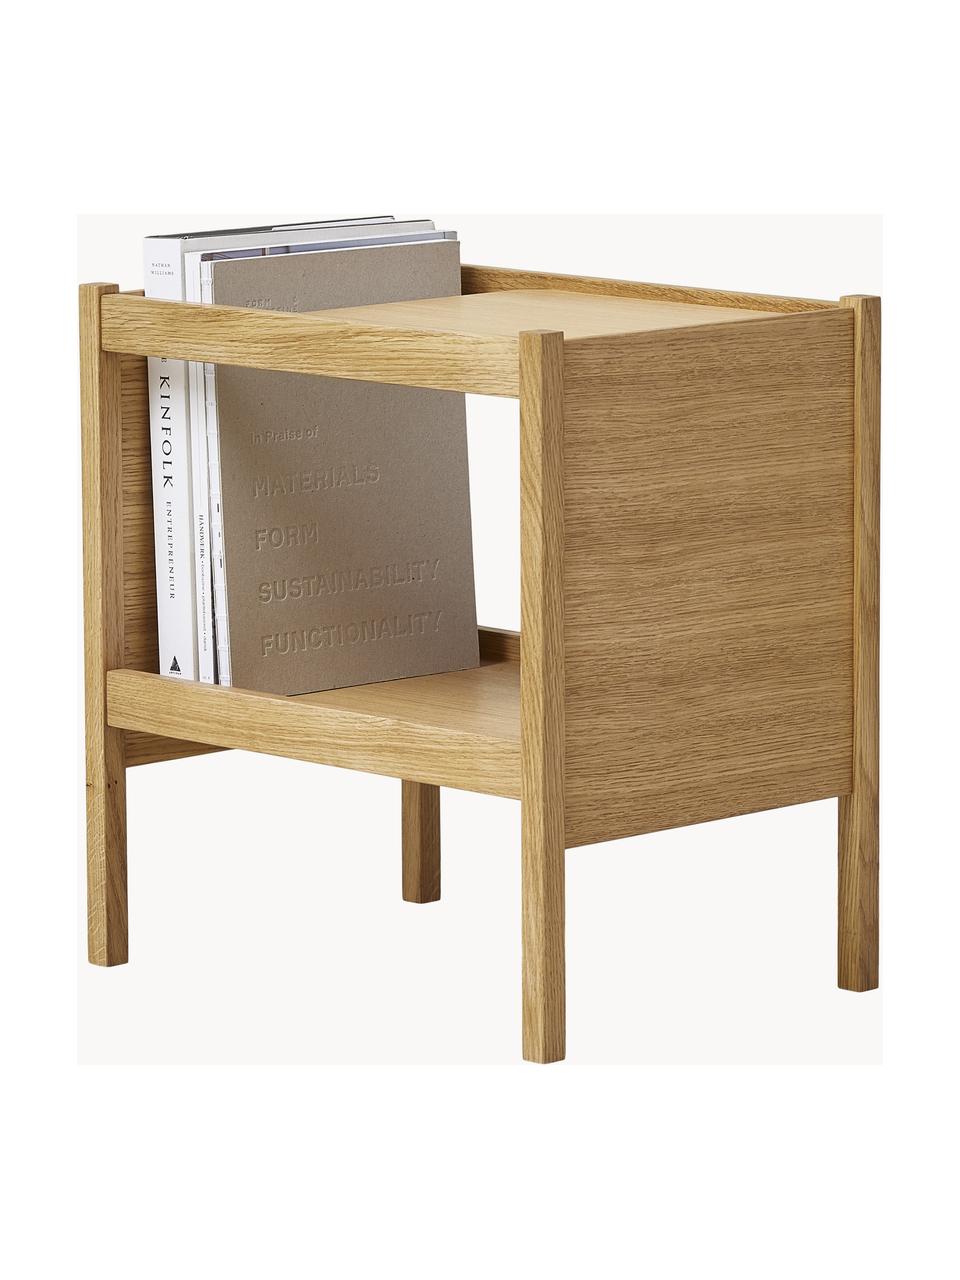 Odkladací stolík z dubového dreva Journal, Dubové drevo, dubová dyha, Dubové drevo, Š 41 x V 43 cm